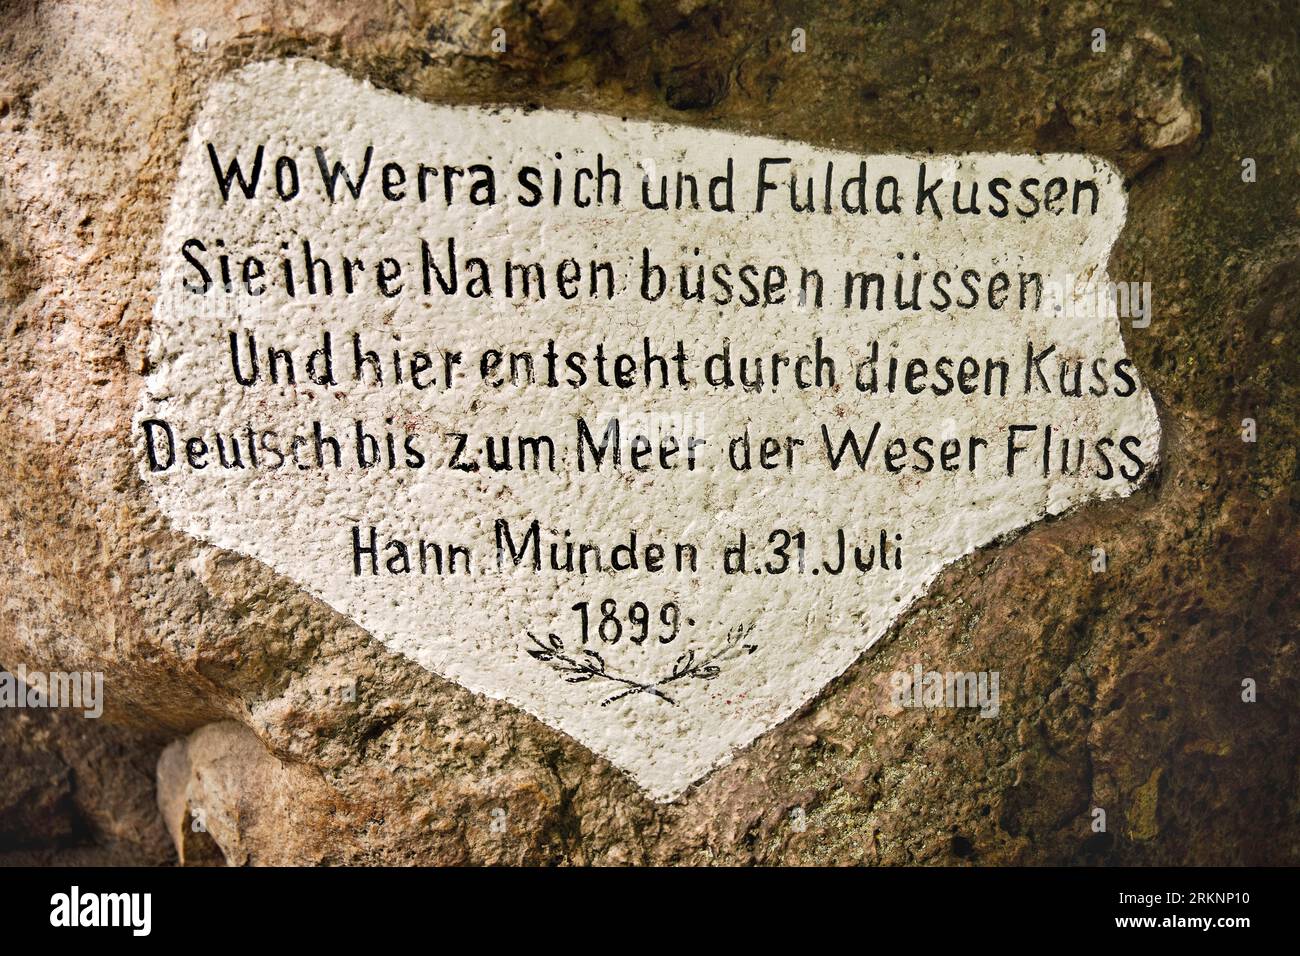 Vecchia pietra Weser con iscrizione, unione dei fiumi Werra e Fulda per formare il fiume Weser, Germania, bassa Sassonia, Hannover Muenden Foto Stock